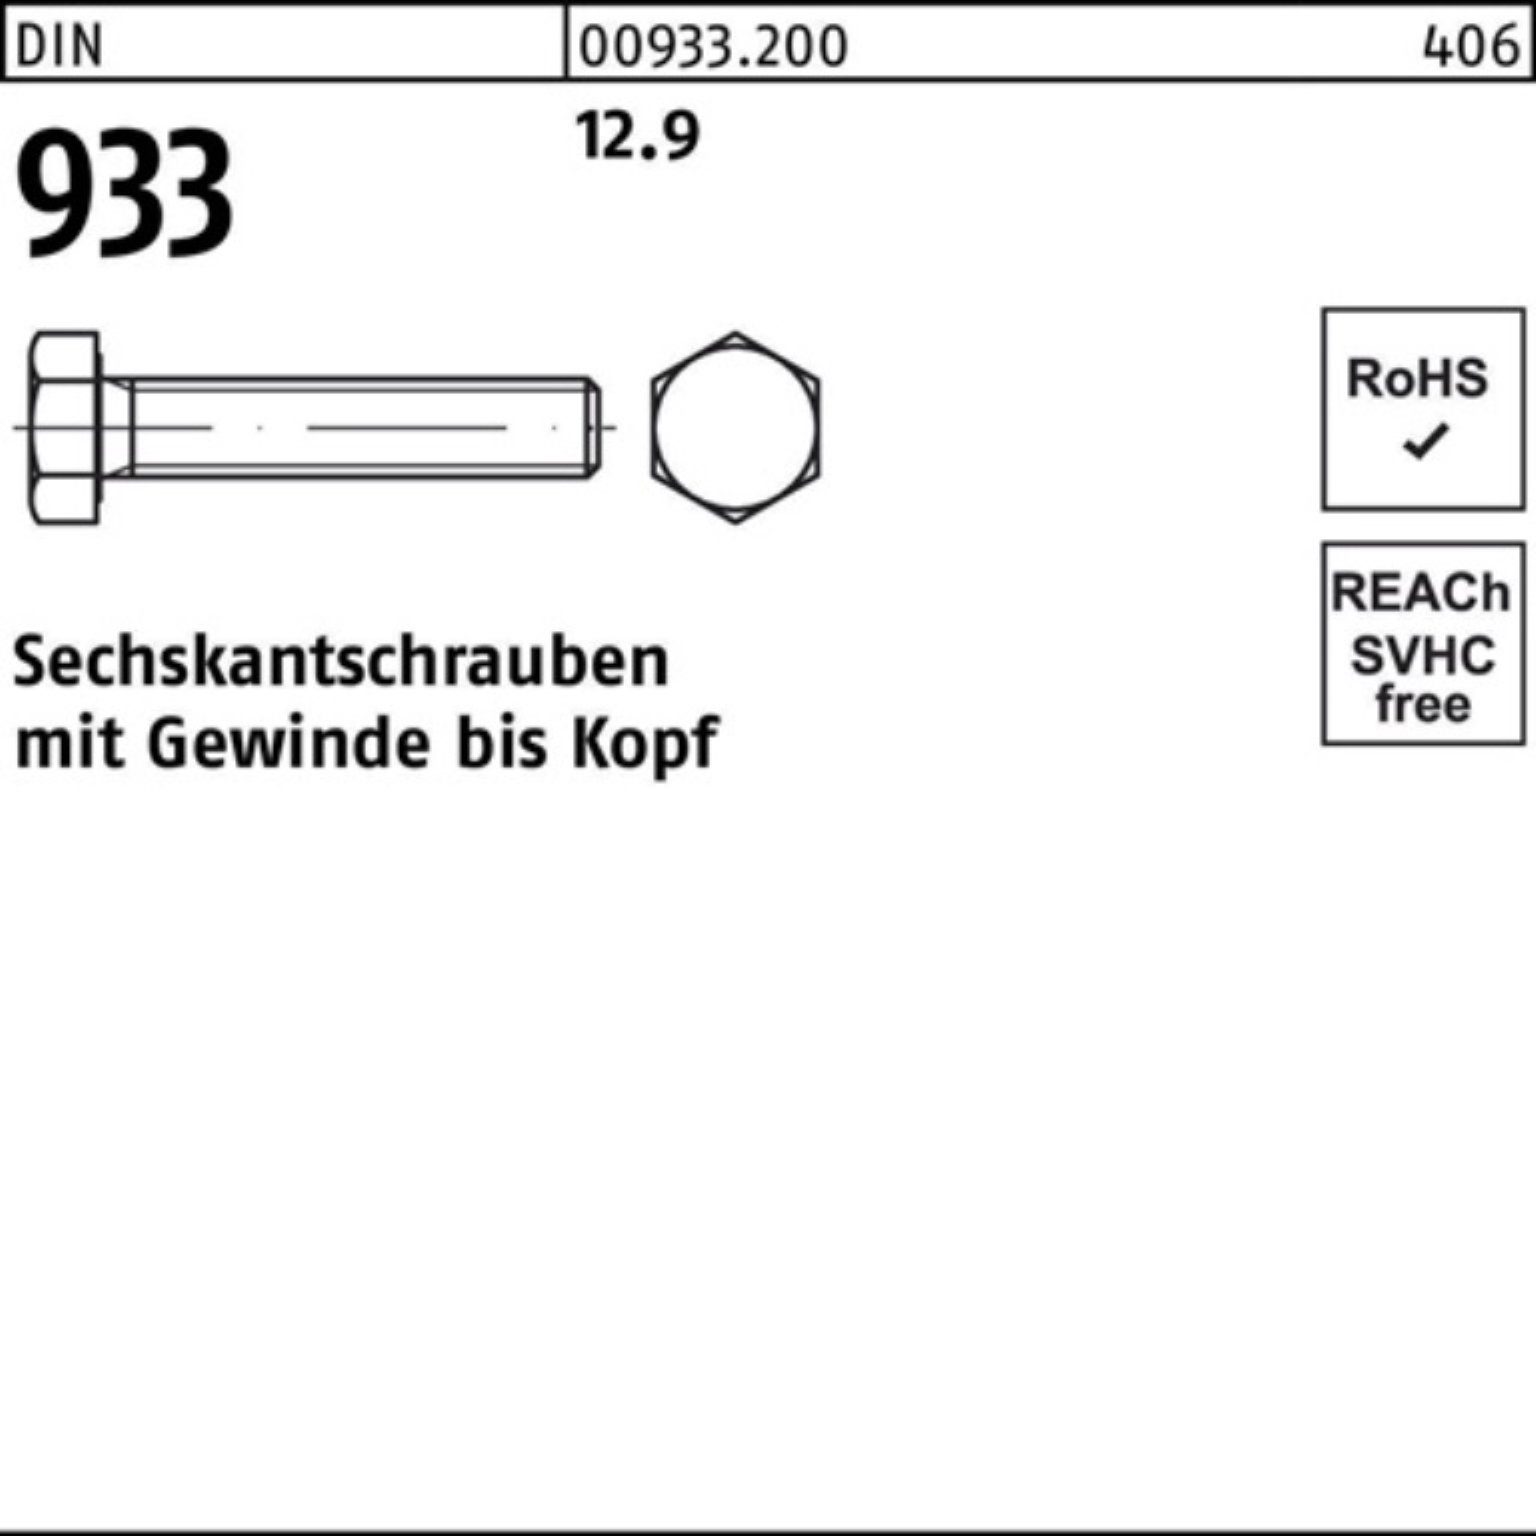 933 Stück Reyher 60 100er Sechskantschraube VG 25 Sechskantschraube 933 DIN DIN M20x 12.9 Pack